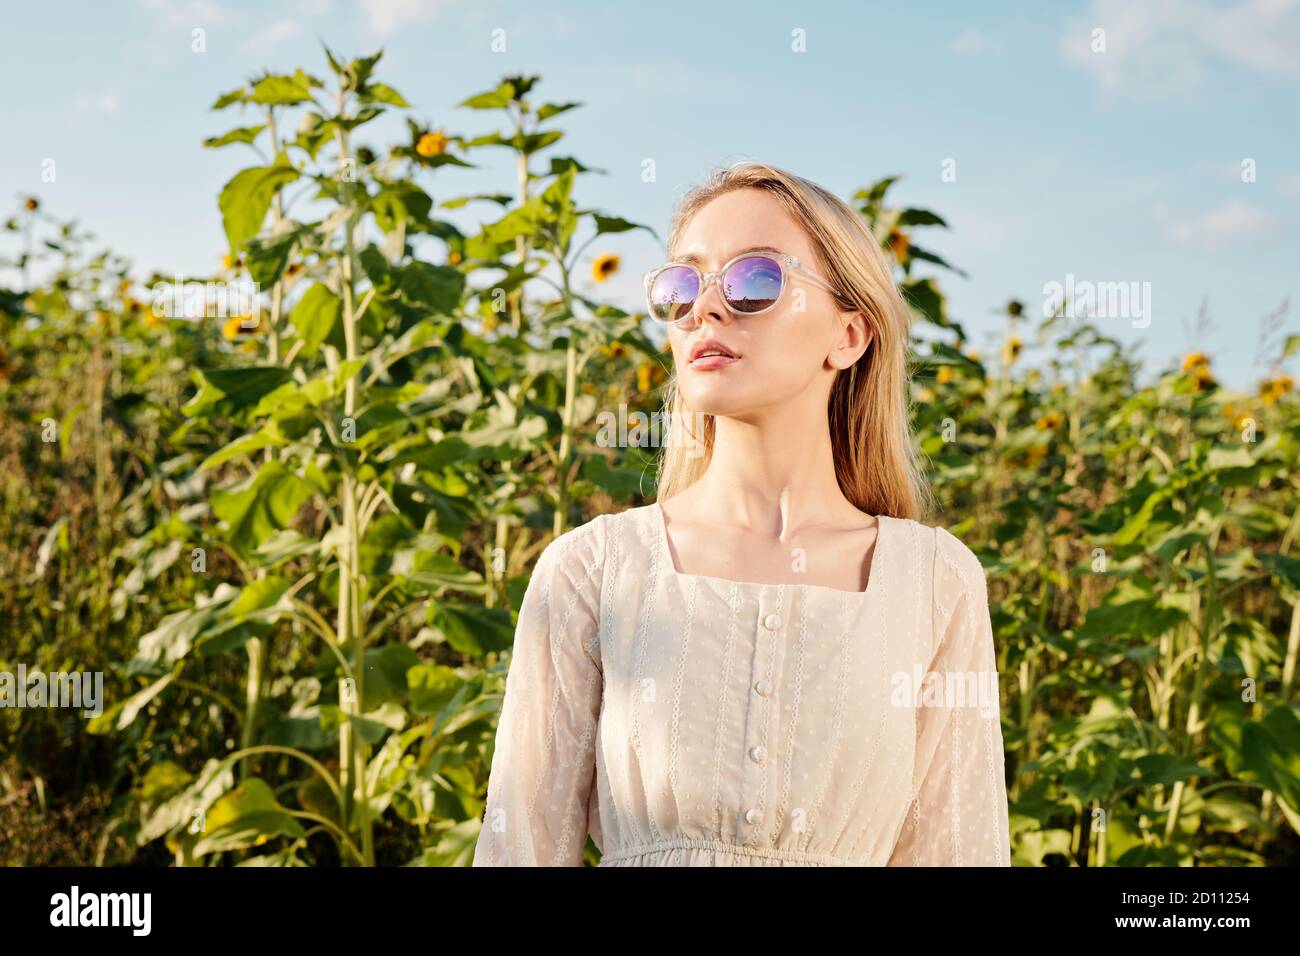 Jeune femme blonde en lunettes de soleil et robe blanche debout avant de l'appareil photo Banque D'Images